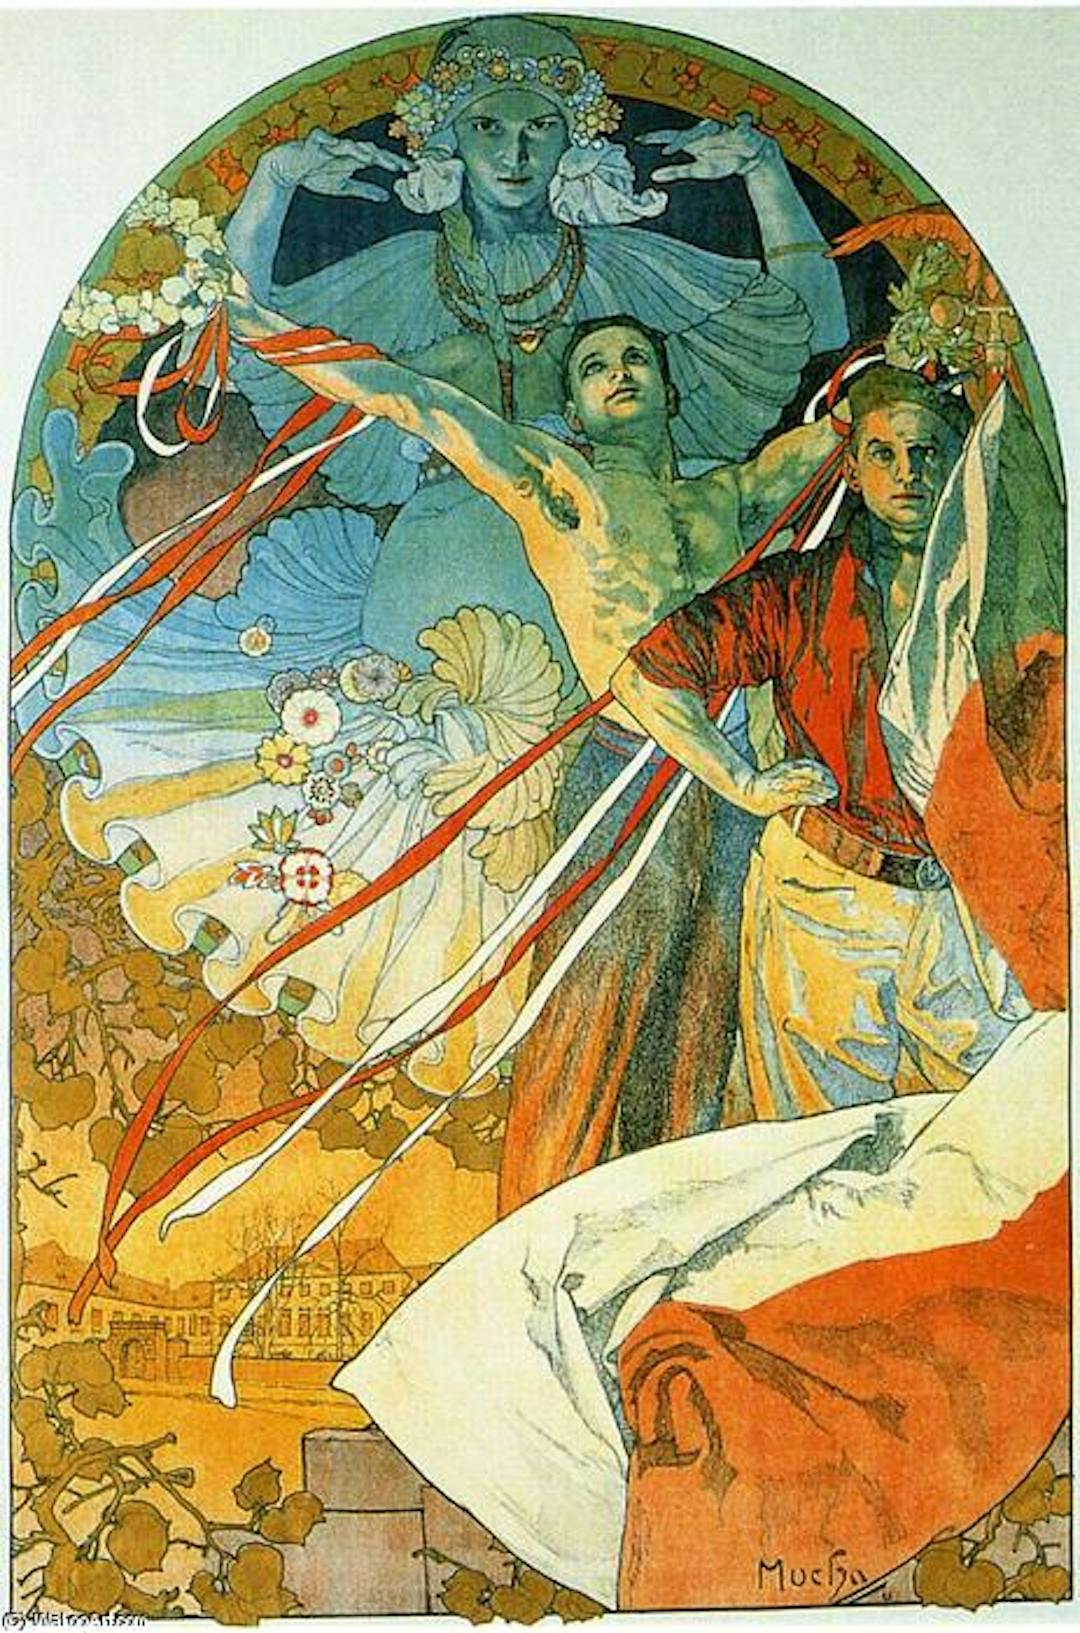 Afiche del 8º Festival Sokol de Alfons Mucha, uno de los creadores clave del movimiento Art Nouveau. Disponible en https://wikioo.org/.